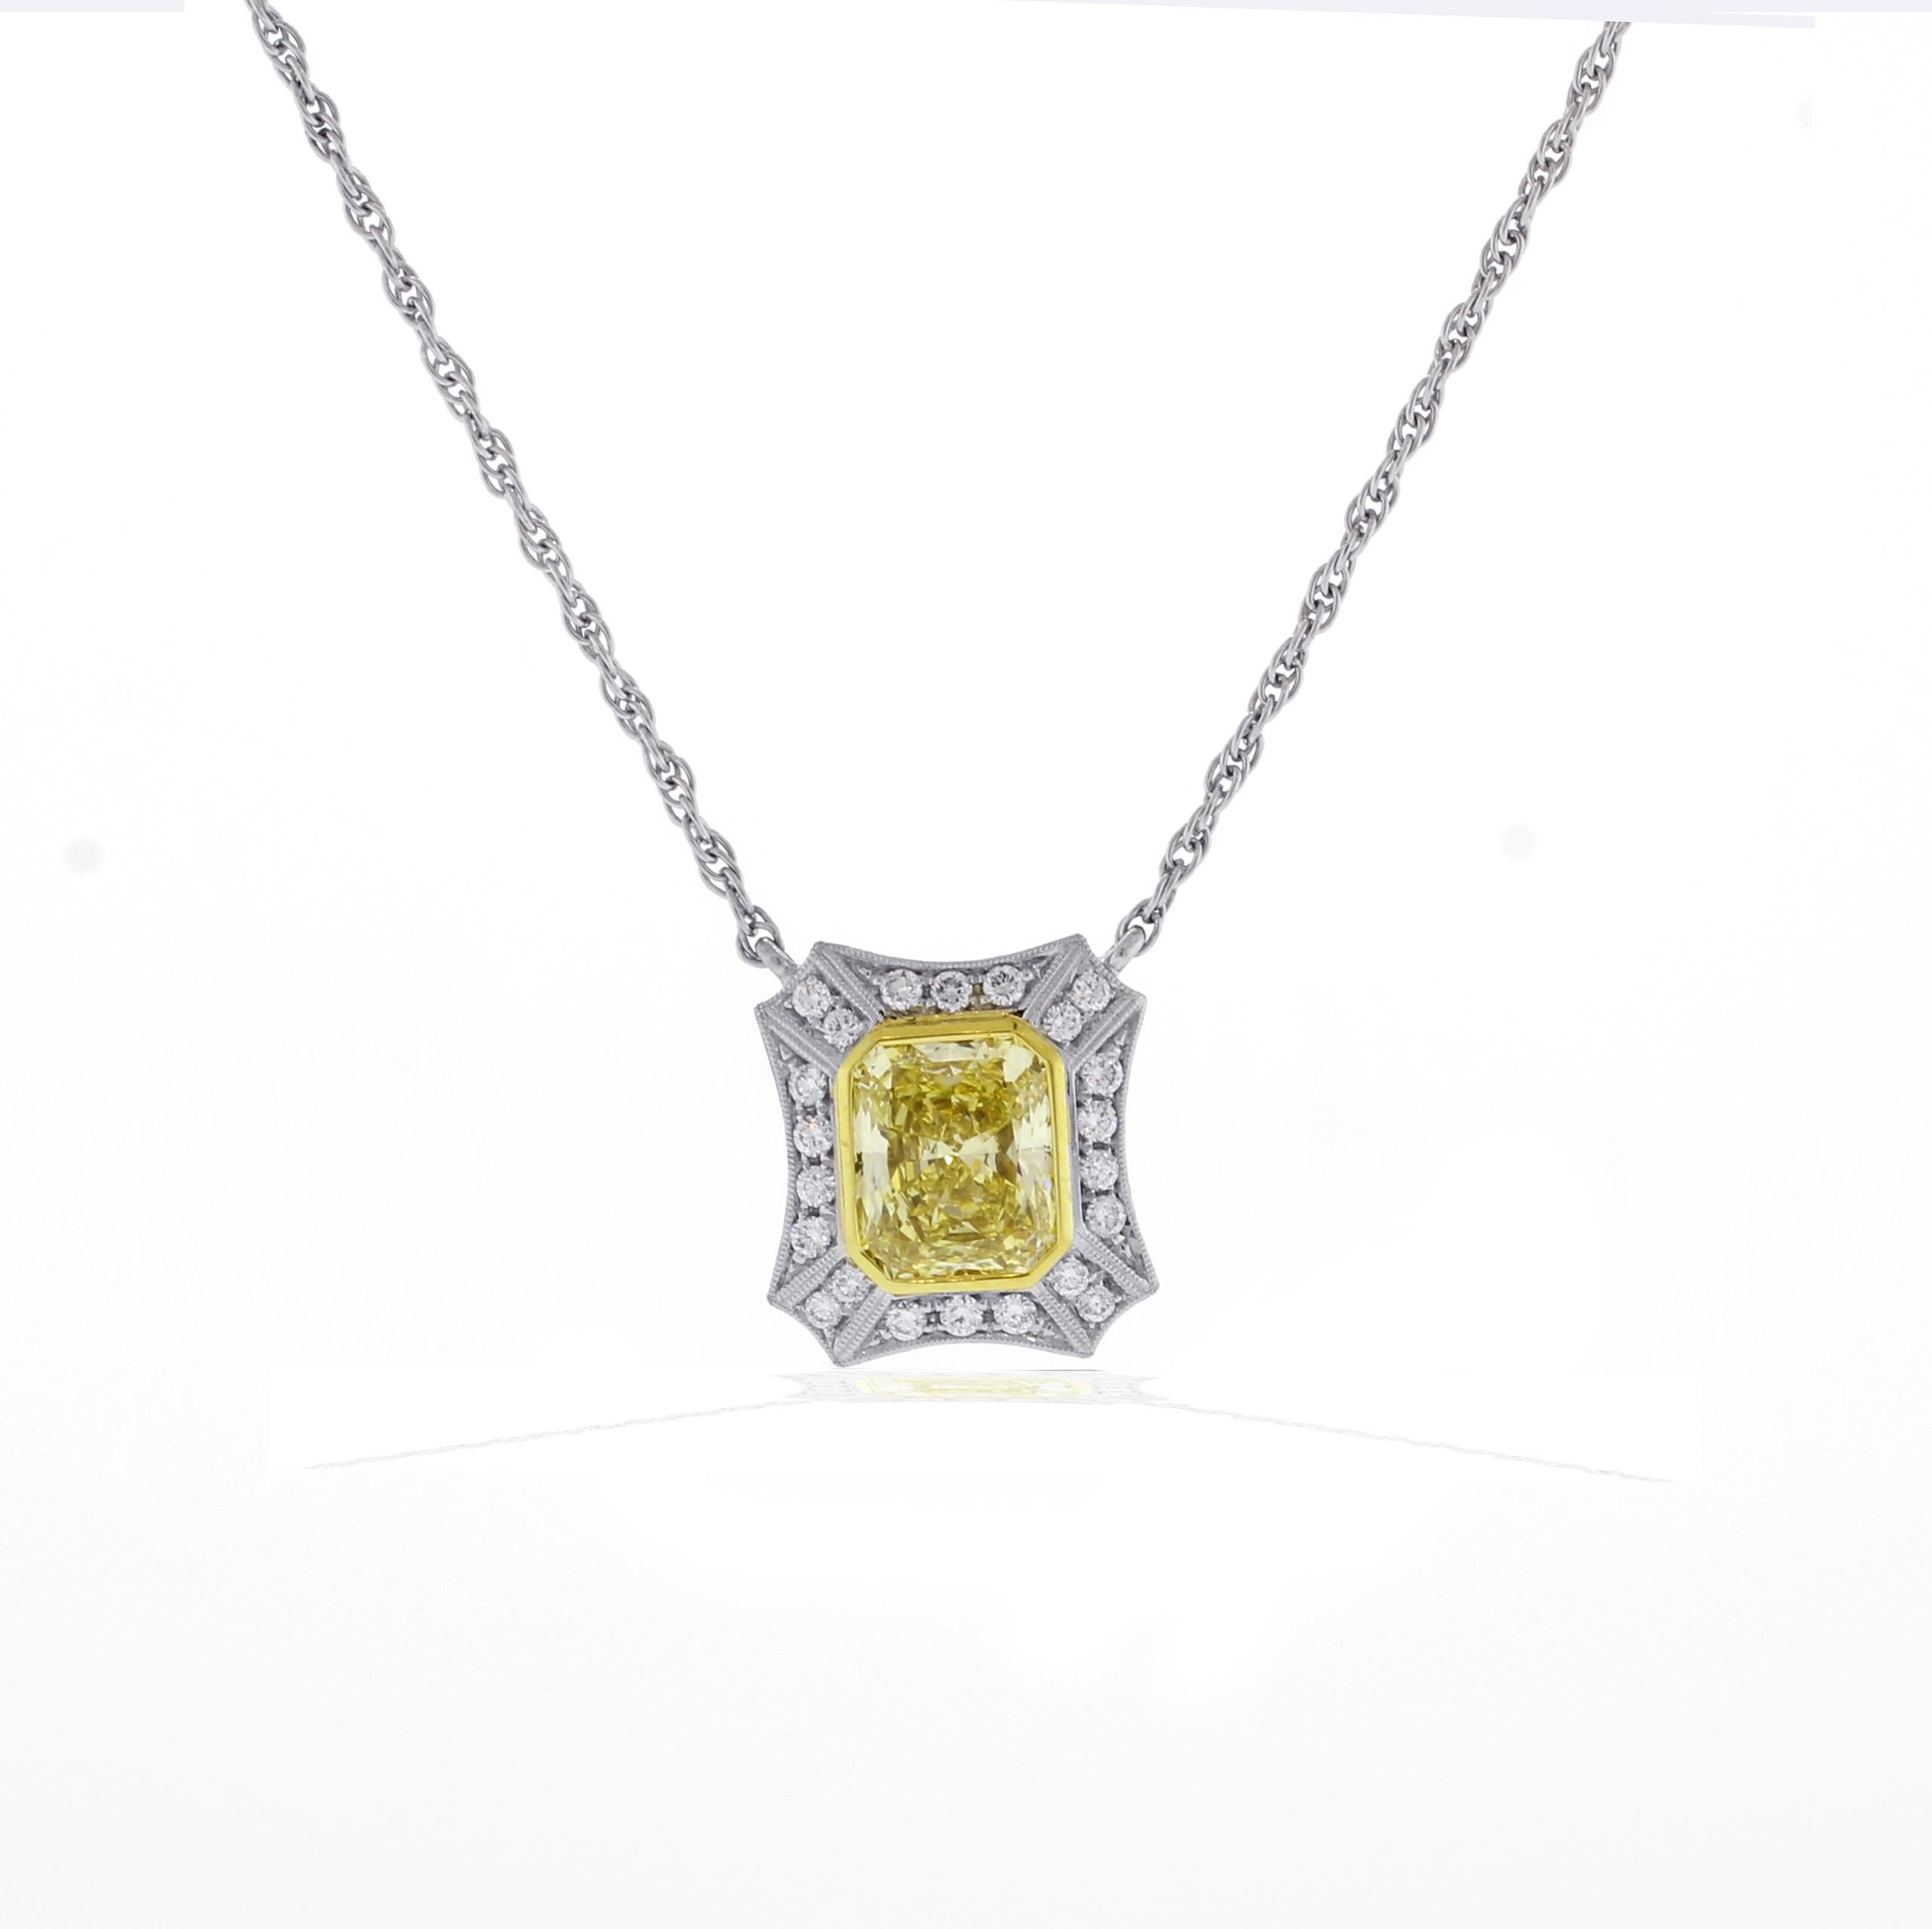 Provenant des maîtres bijoutiers de Pampillonia, ce diamant de couleur naturelle jaune radiant très prisé pèse 2,46 carats. Le diamant repose dans un micro en platine fait main  avec vingt-deux autres diamants taille brillant. Le rapport du GIA sur